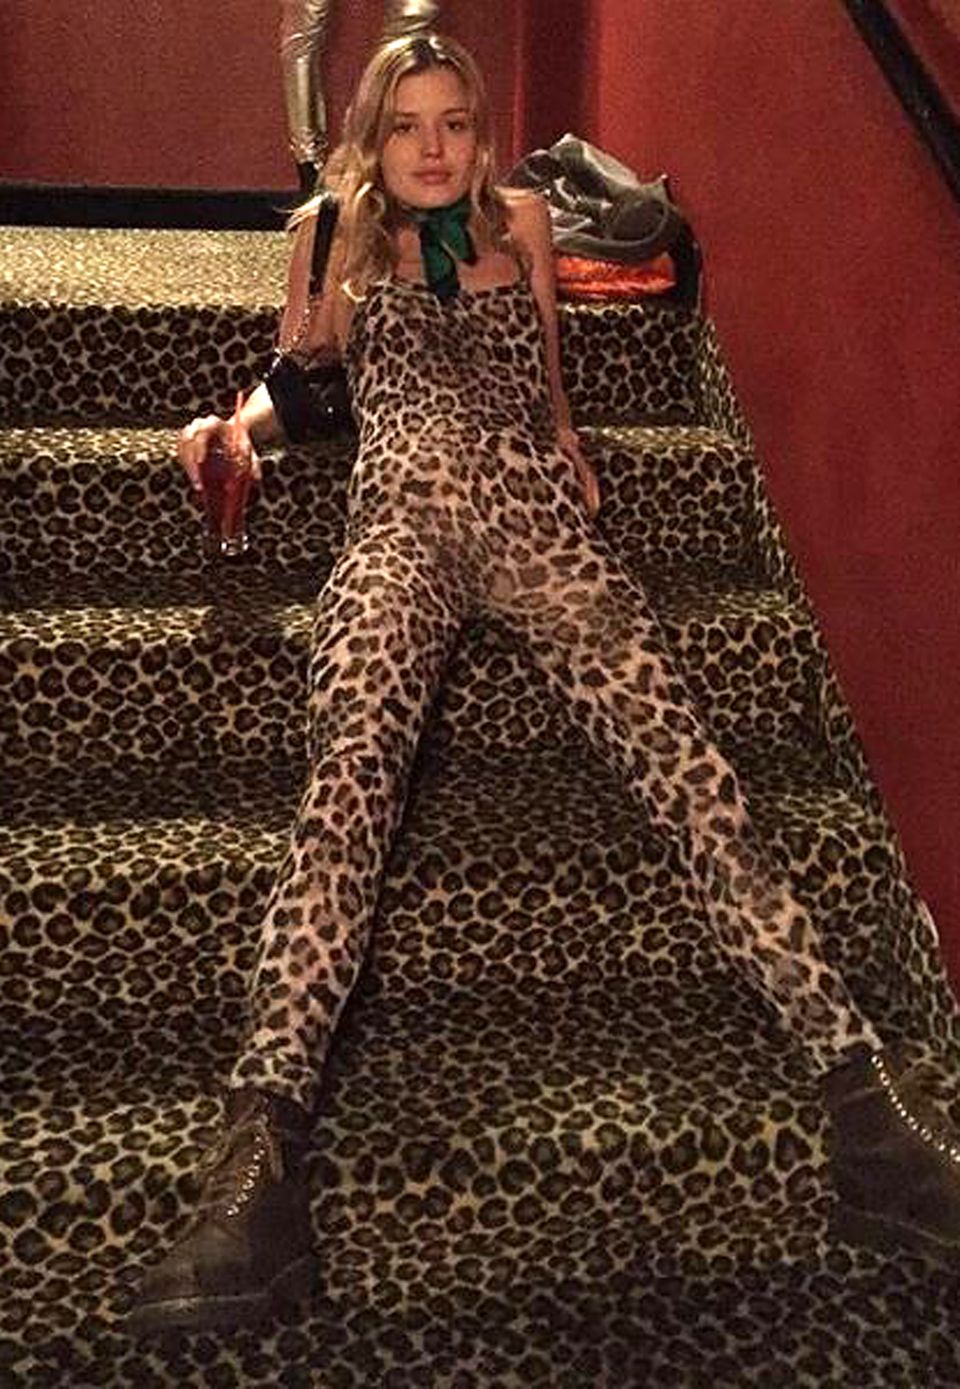 Tierisch wild geht es bei Model Georgia May Jagger zu. Die Tochter von Rolling-Stones-Frontmann Mick legt sich im Leo-Overall einfach mal ganz entspannt auf eine Treppe mit gleichem Muster.